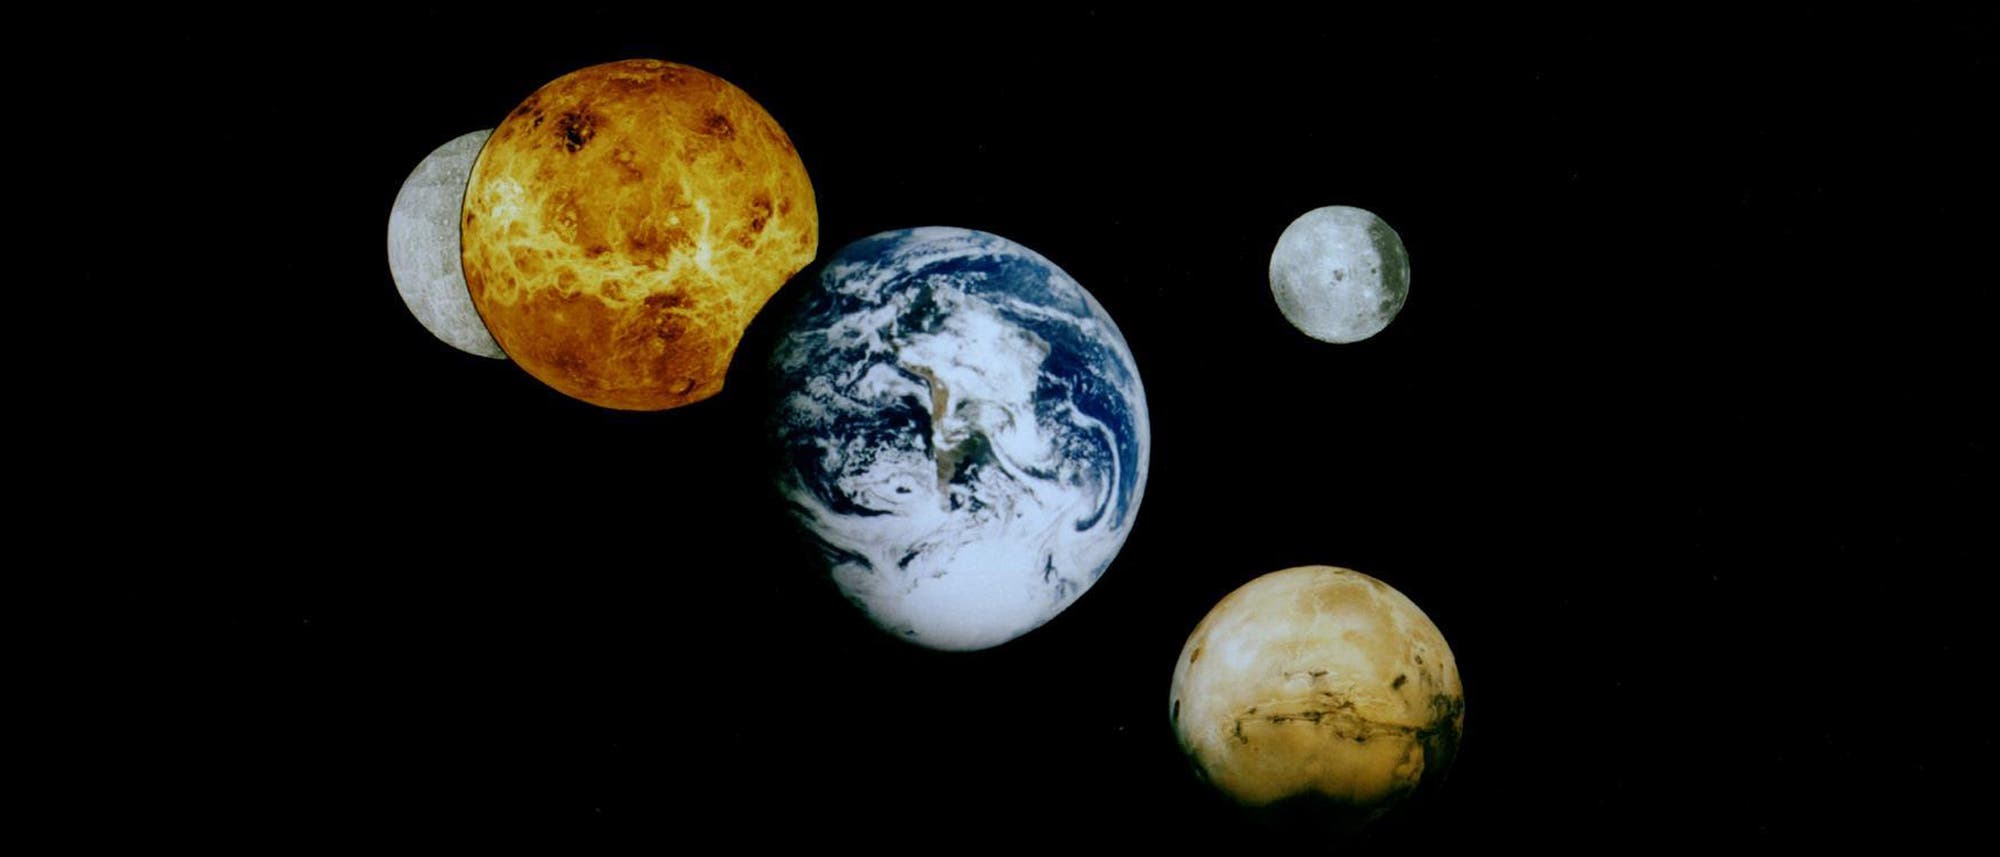 Merkur, Venus, Mars und Erde im Sonnensystem